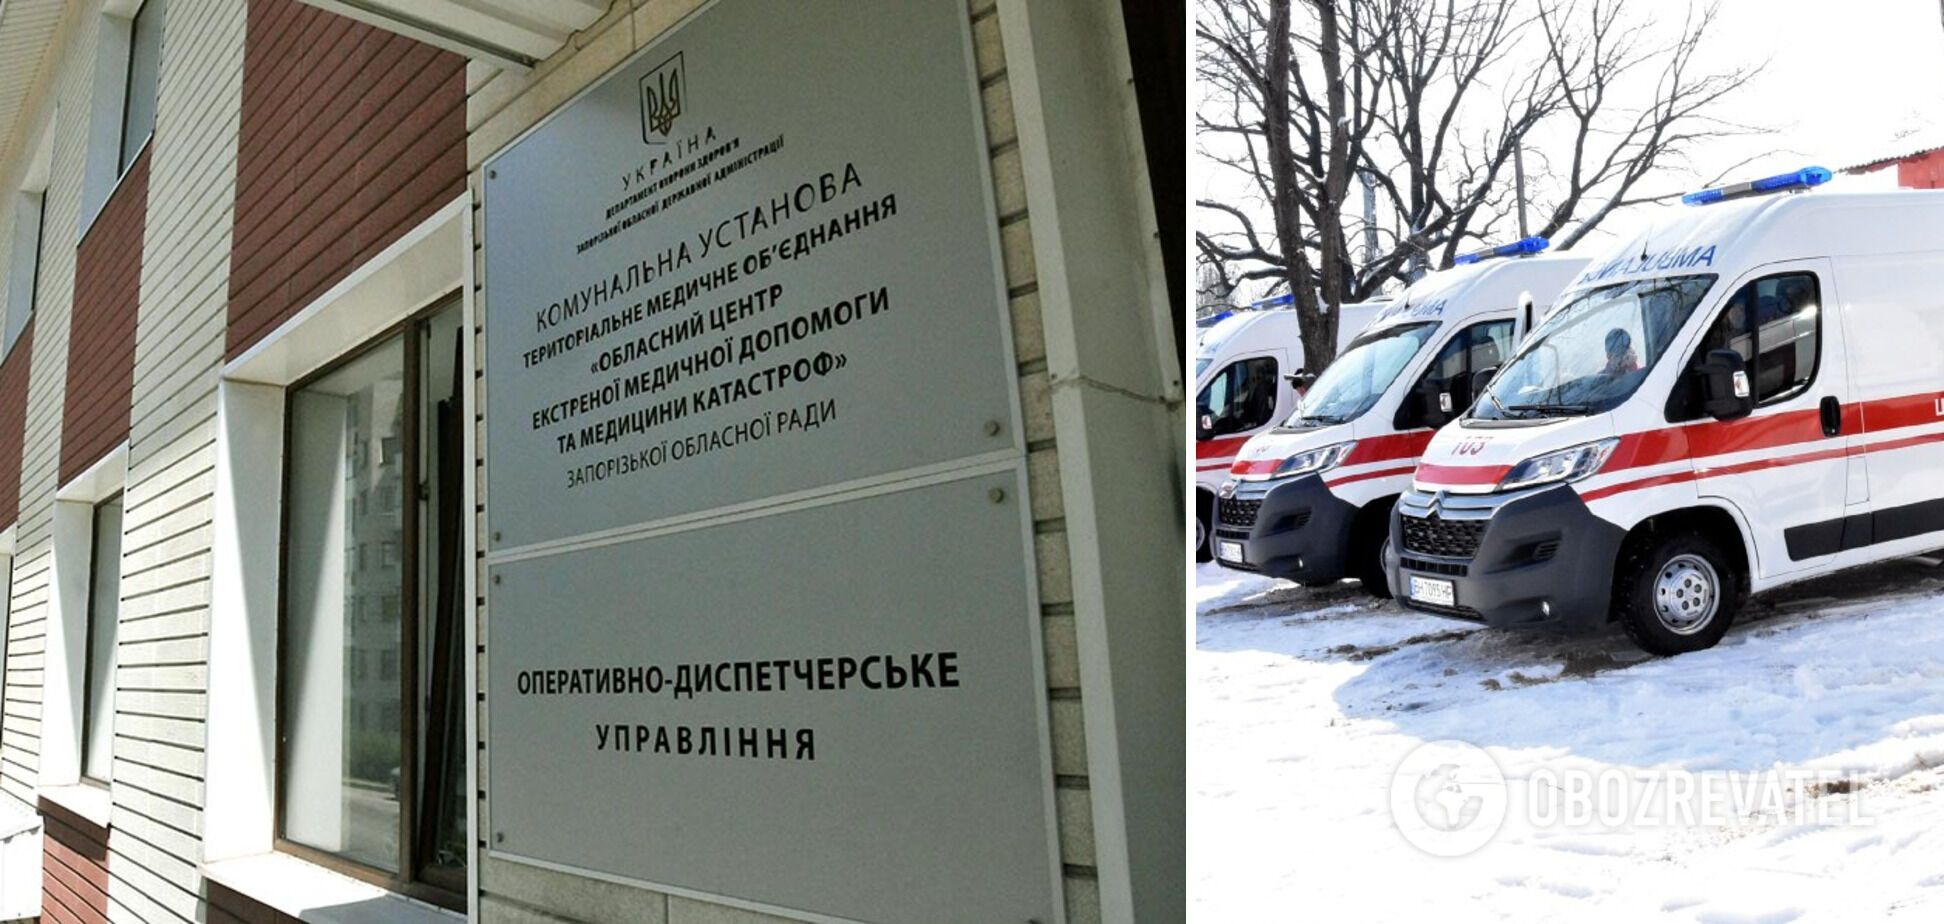 Постраждалого пенсіонера врятували медики Запорізького облцентру екстреної медичної допомоги й медицини катастроф